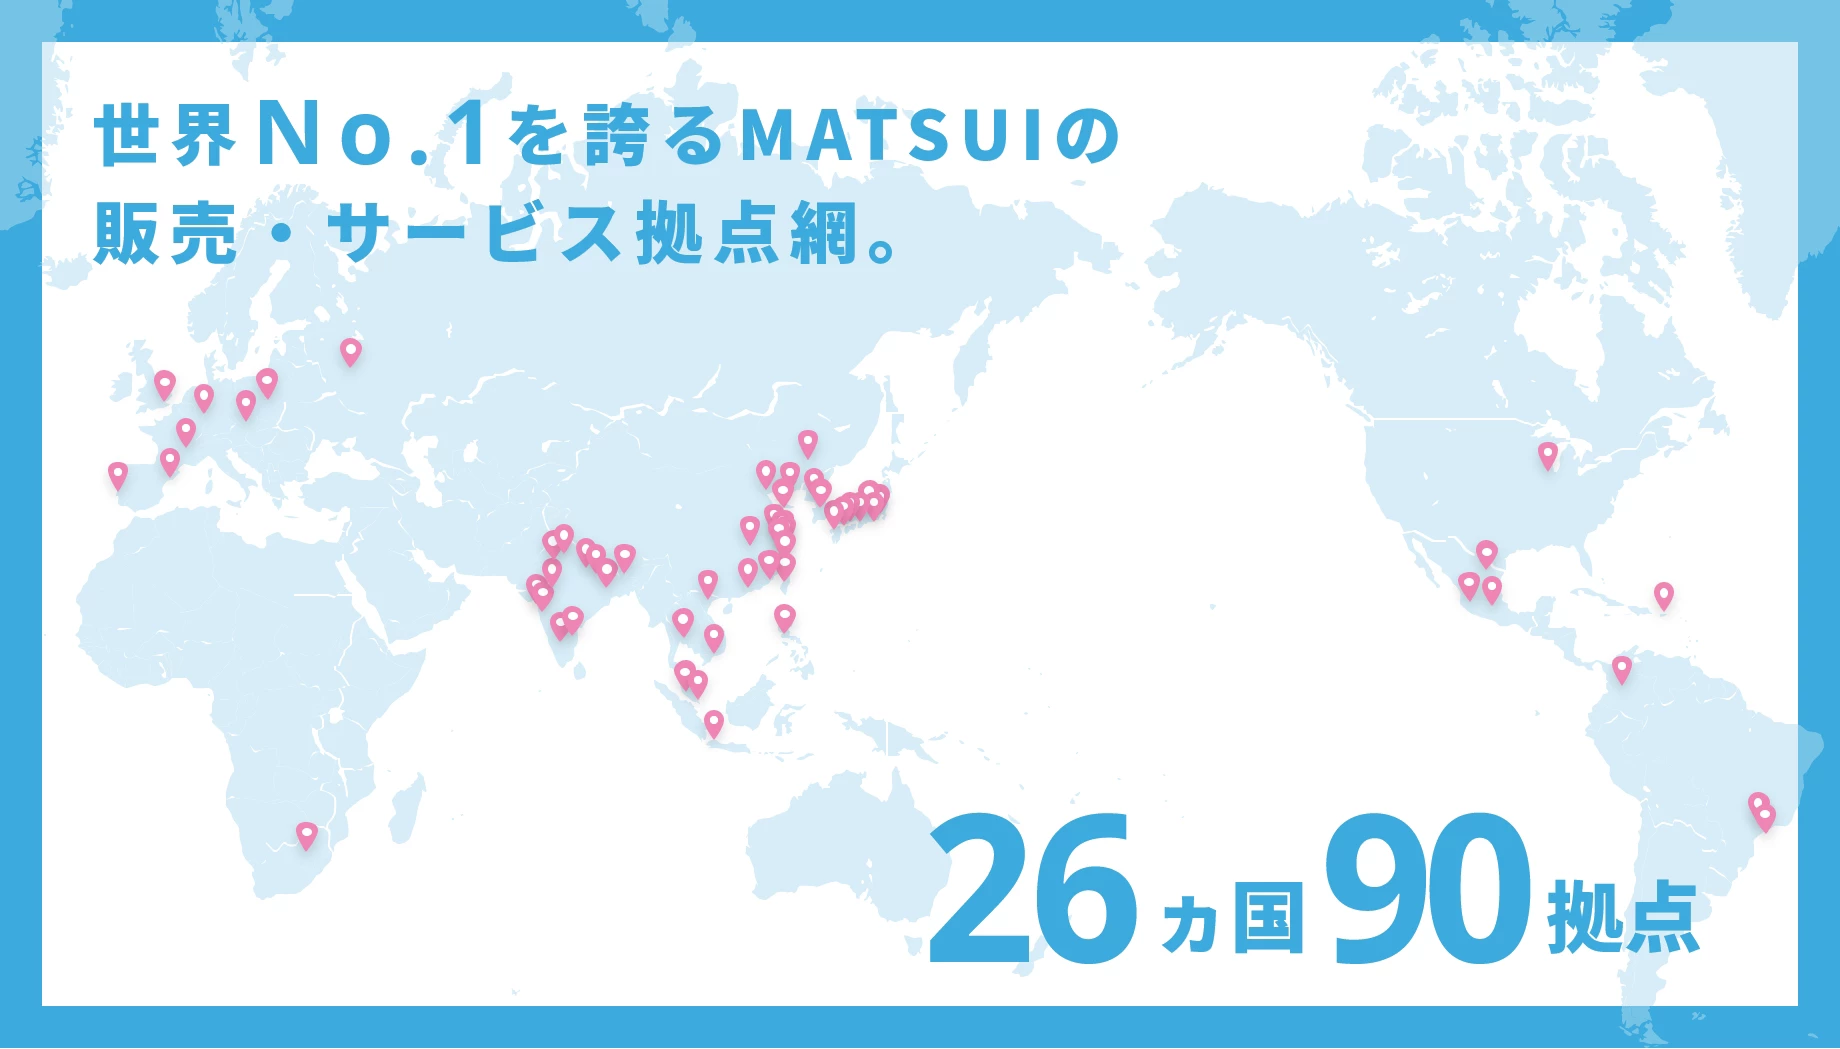 26ヵ国90拠点におよぶ松井製作所のグローバルネットワーク